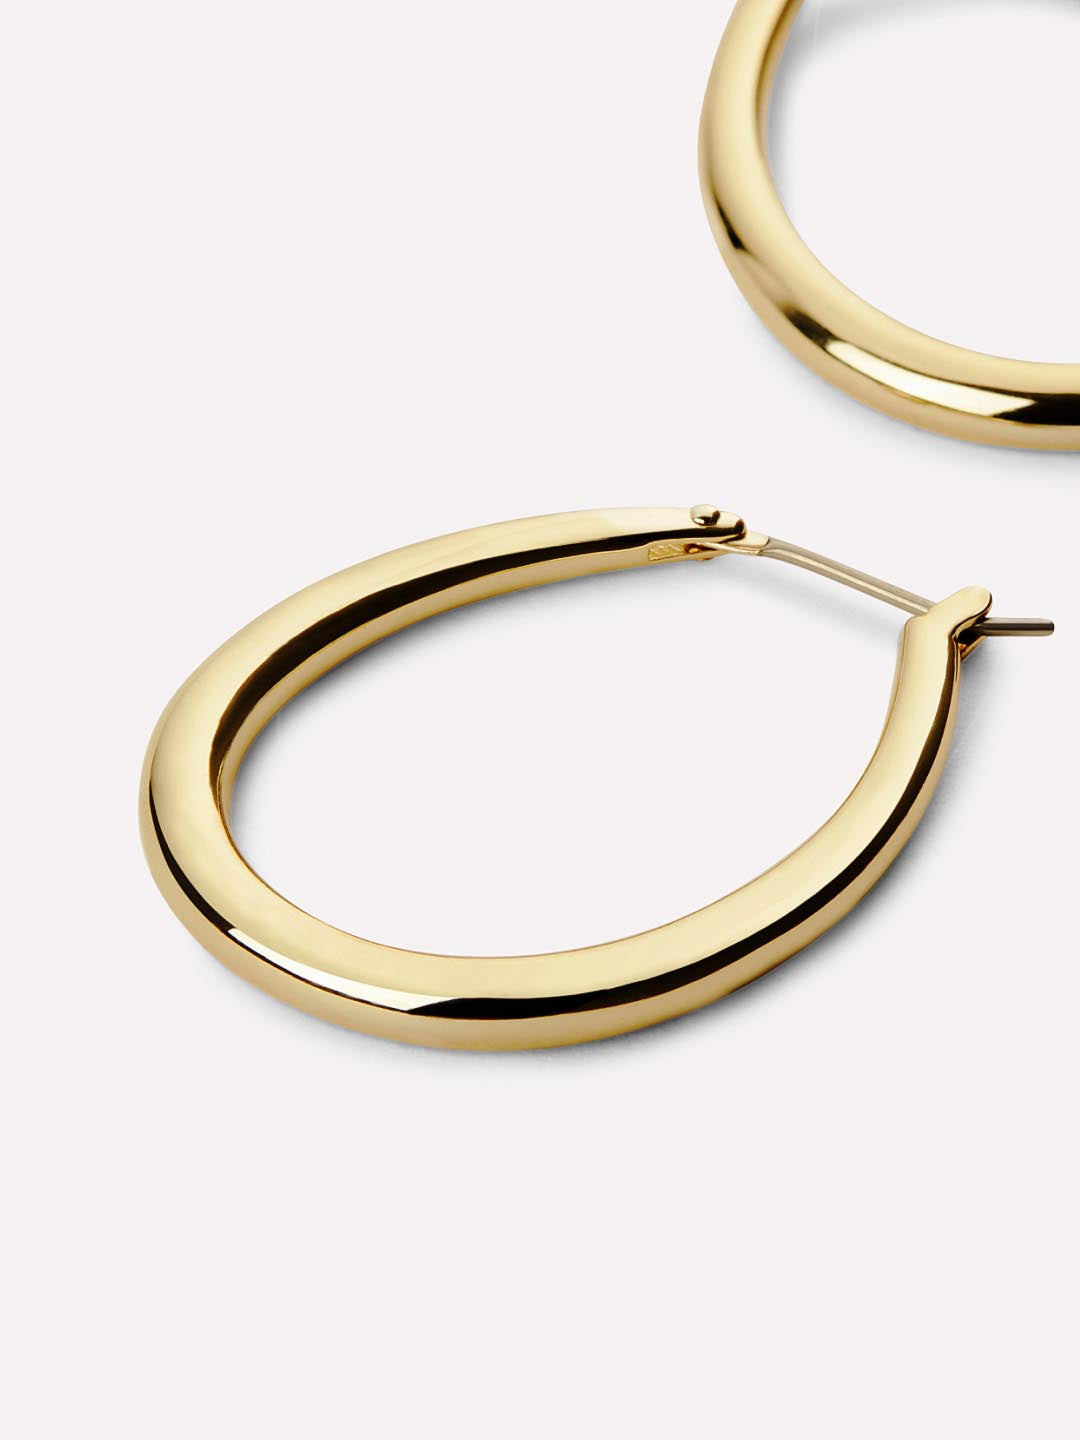 Gold Hoop Earrings - Cuidado | Ana Luisa Jewelry